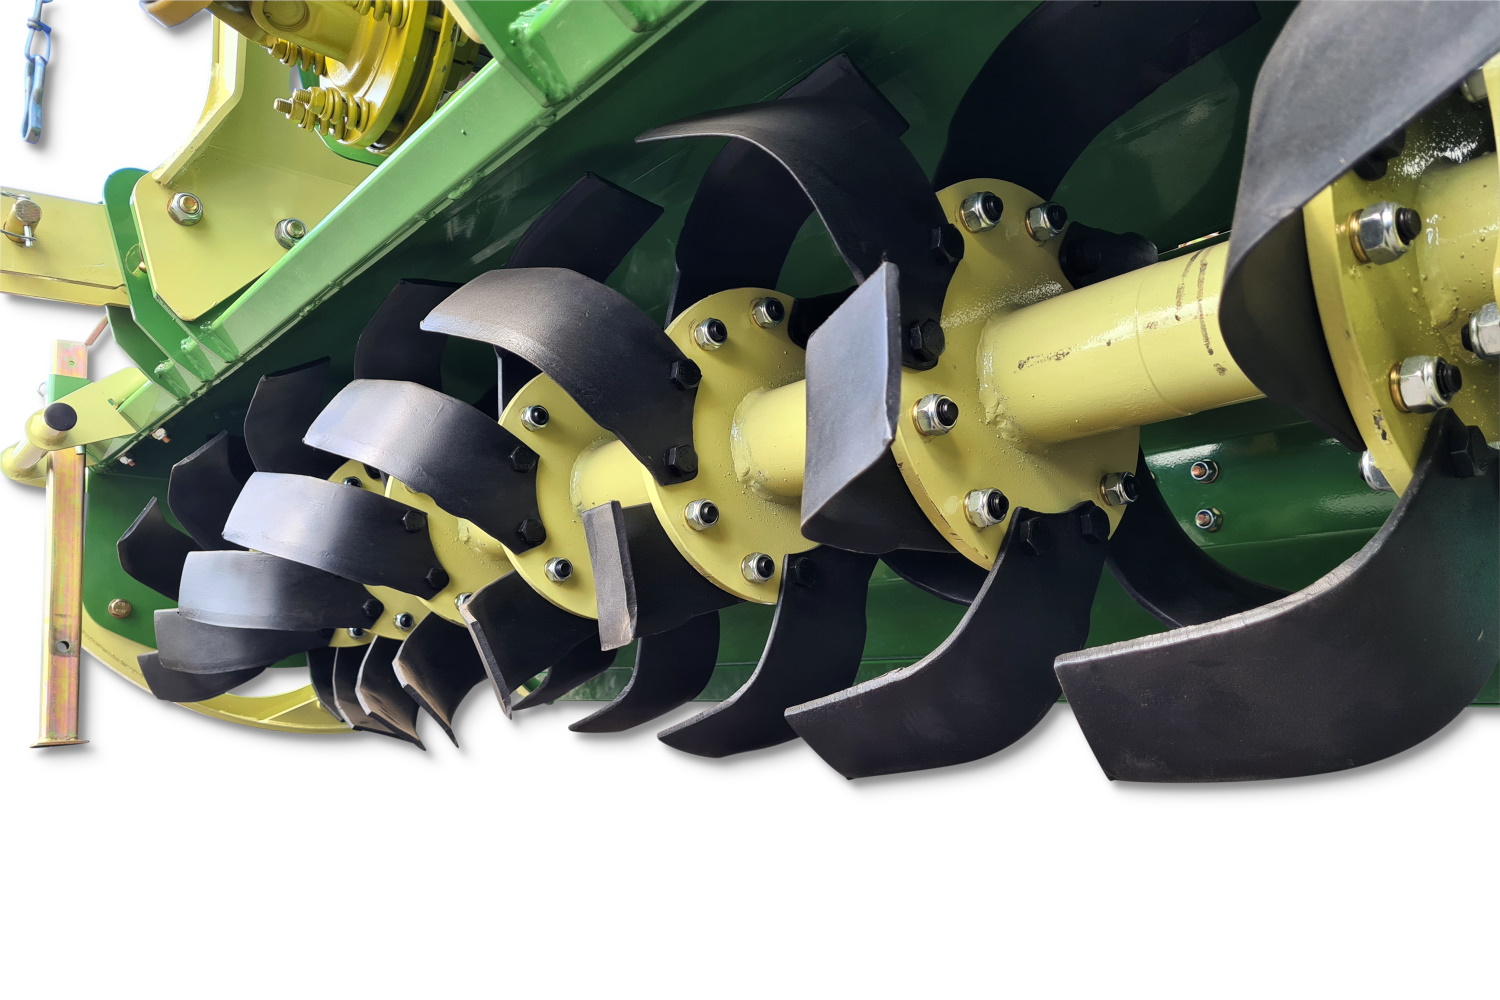 Bodenfräse 1,80 m schwere Ausführung mit Seitengetriebeantrieb | Fräse Stark RX 180 Profi - 4